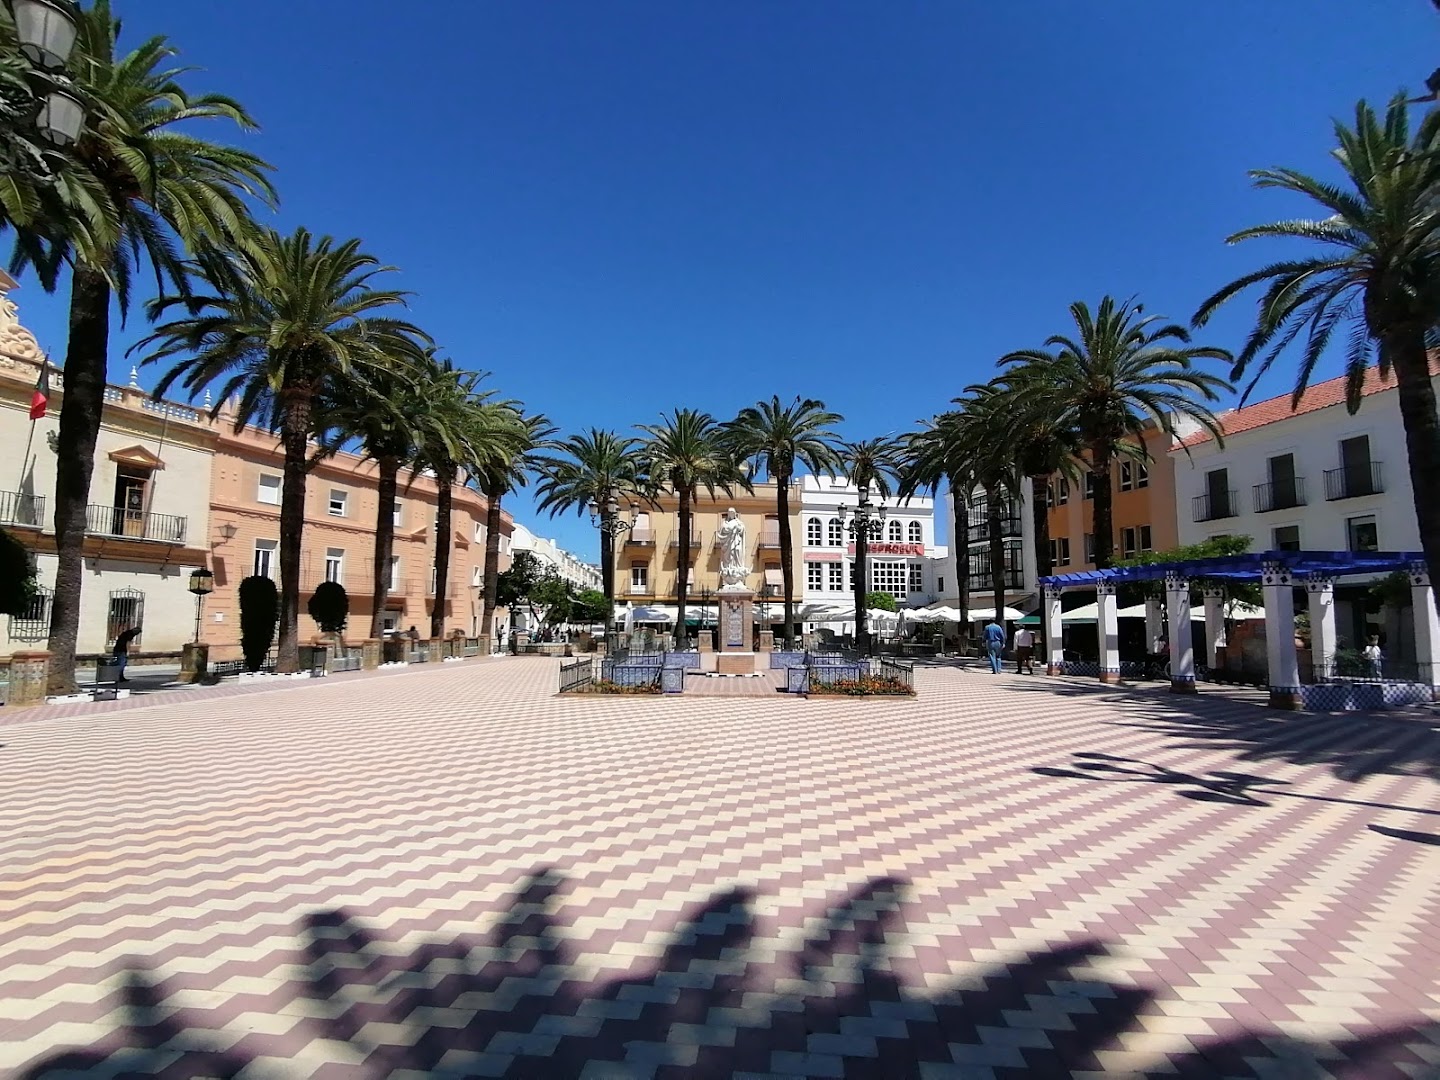 Ayuntamiento de Ayamonte